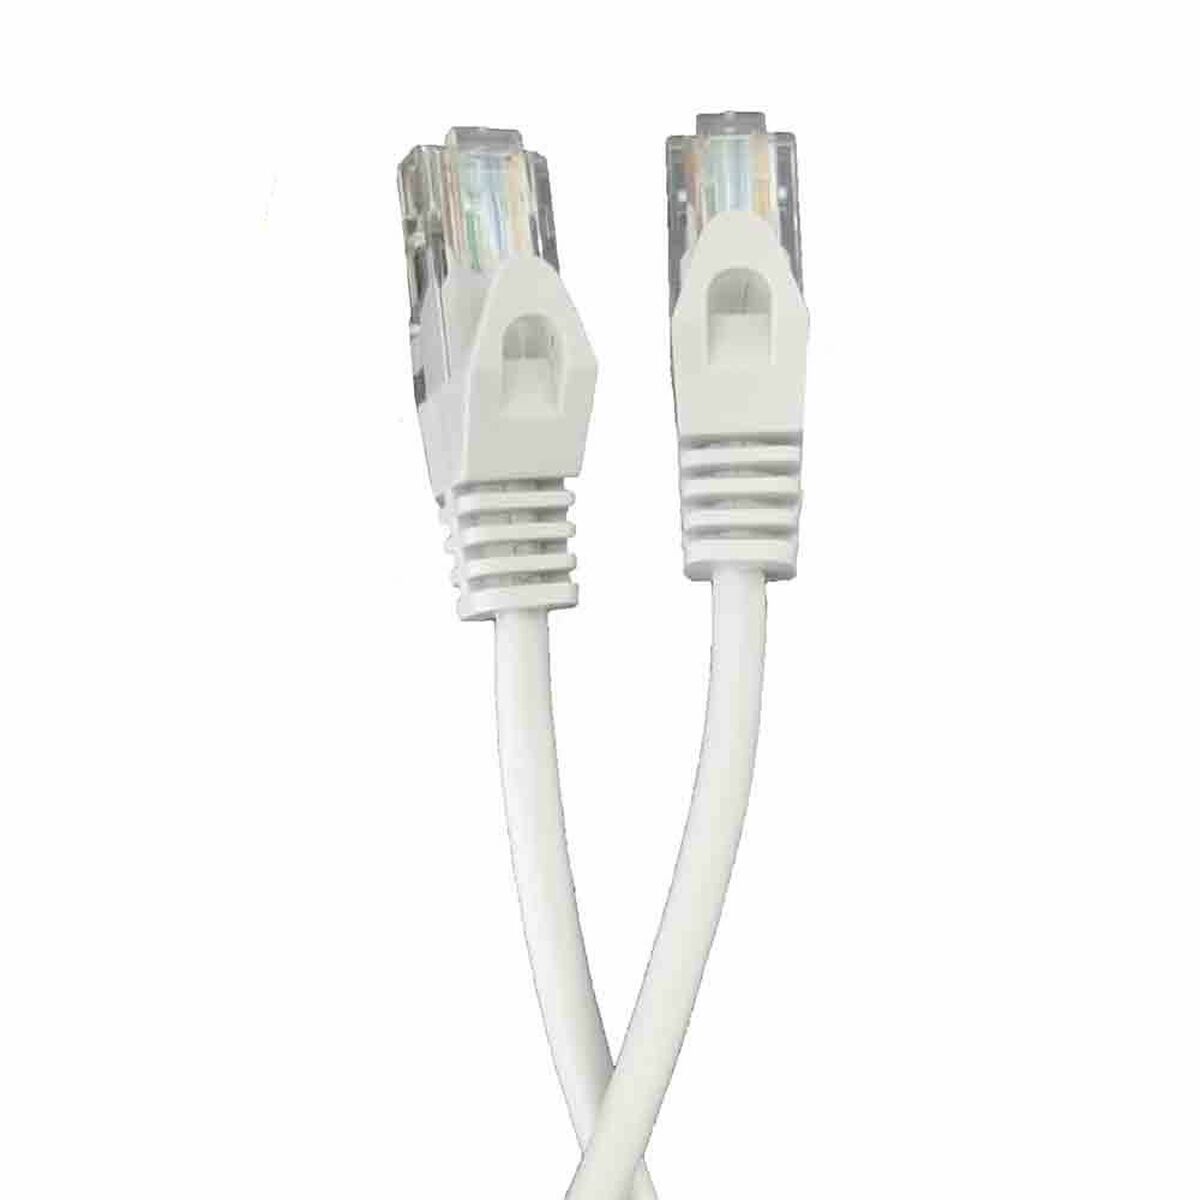 UTP Category 5e Rigid Network Cable EDM White